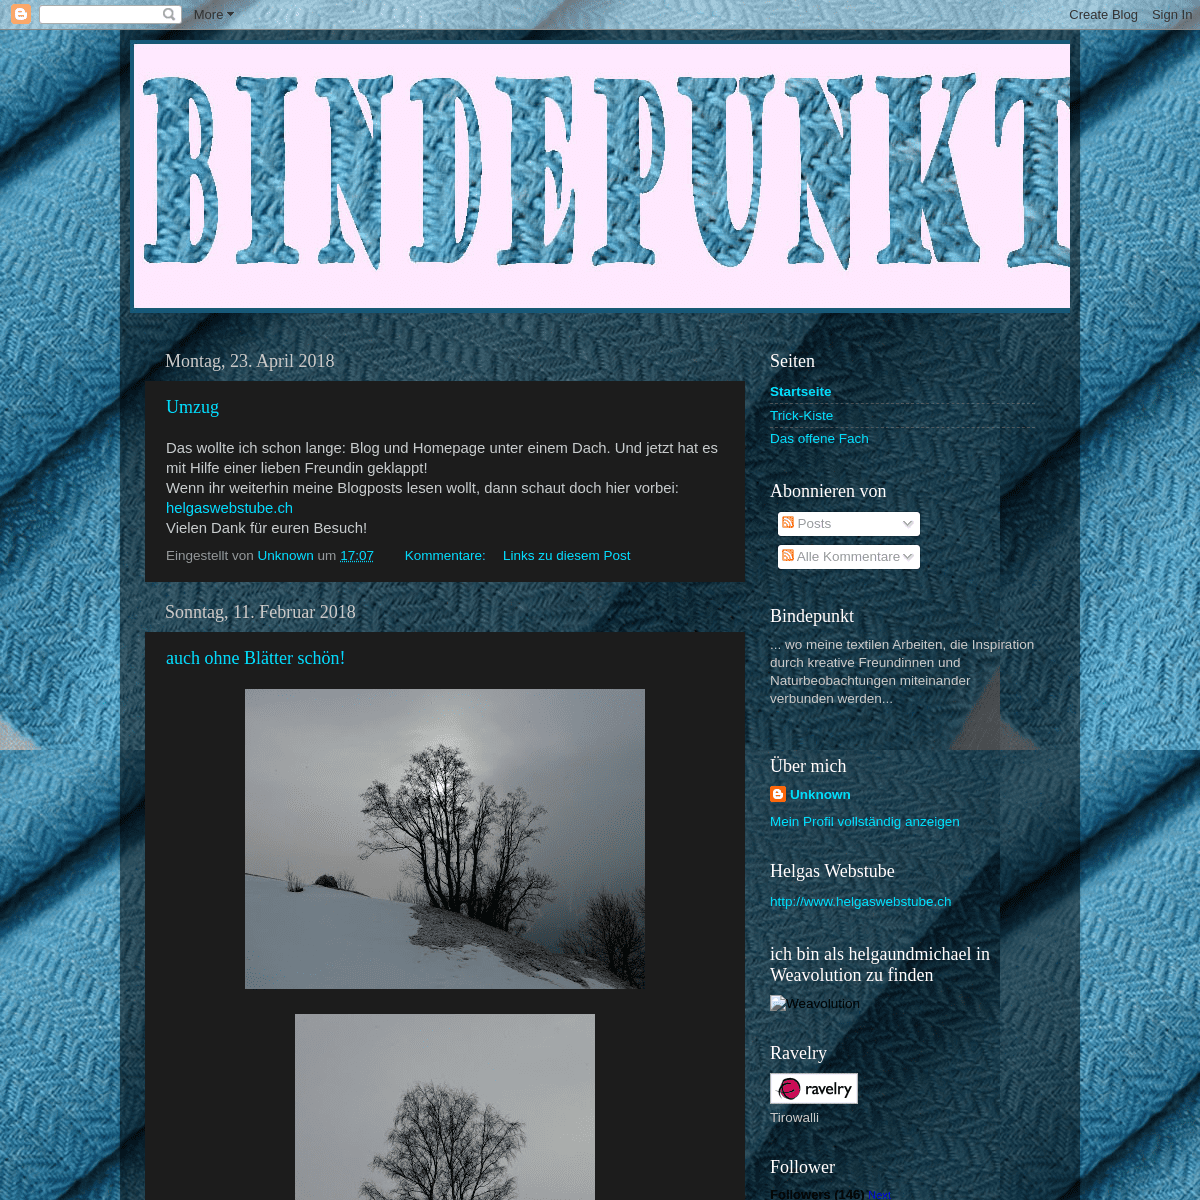 A complete backup of bindepunkt.blogspot.com